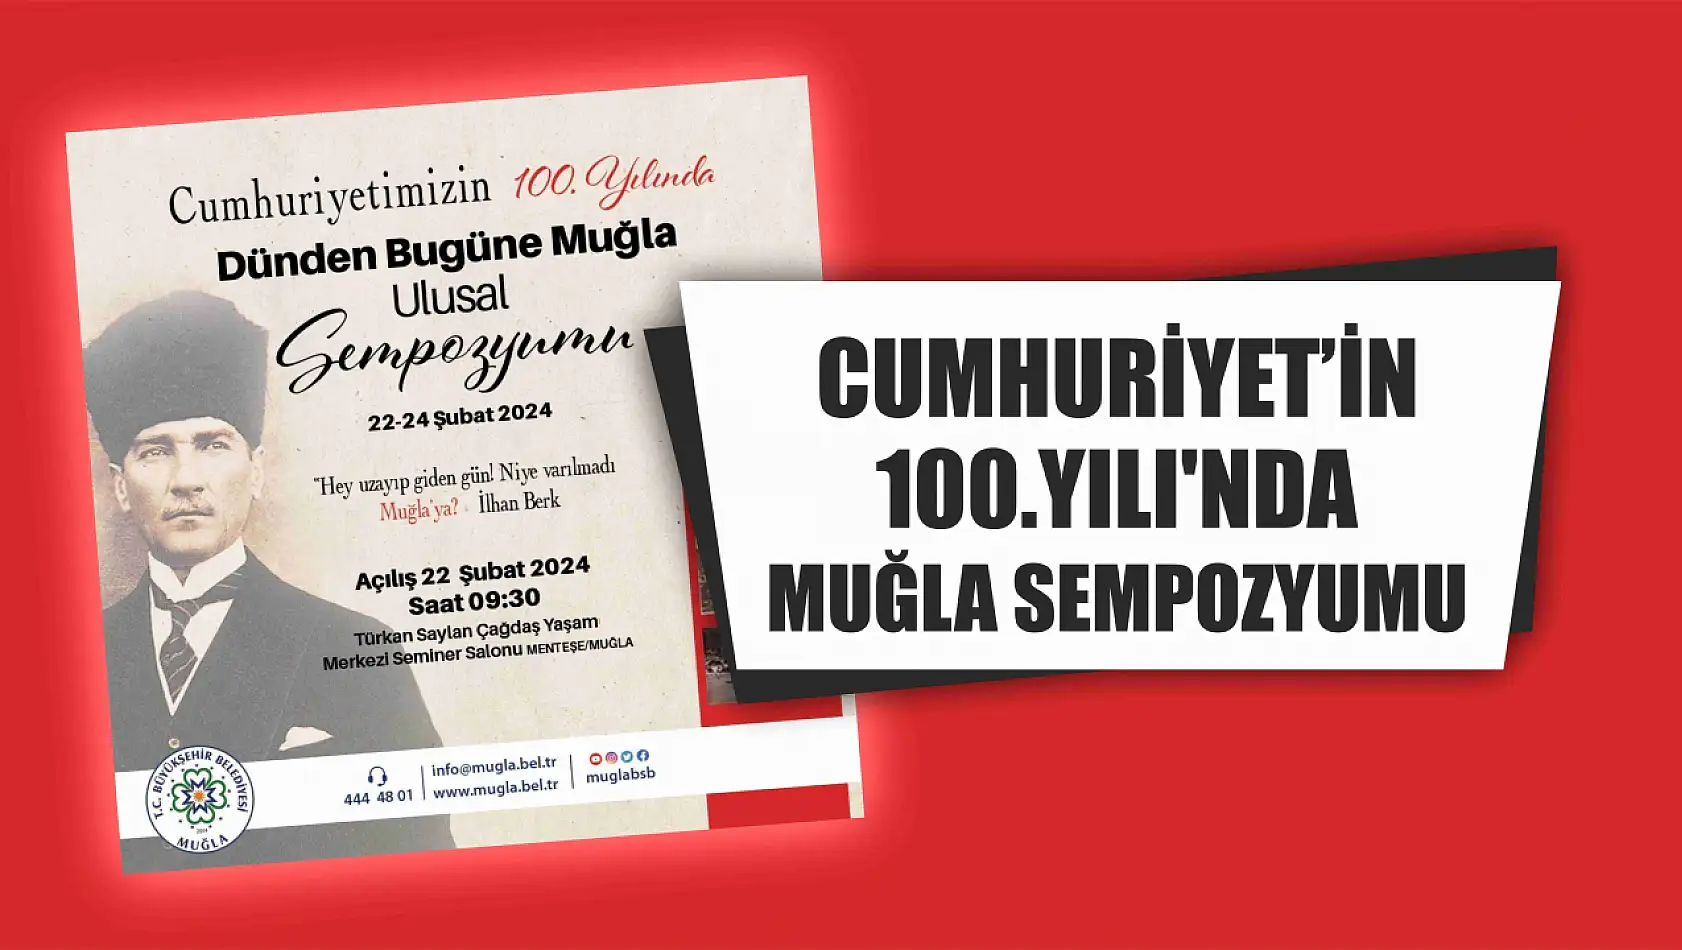 Cumhuriyet'in 100.Yılı'nda Muğla Sempozyumu